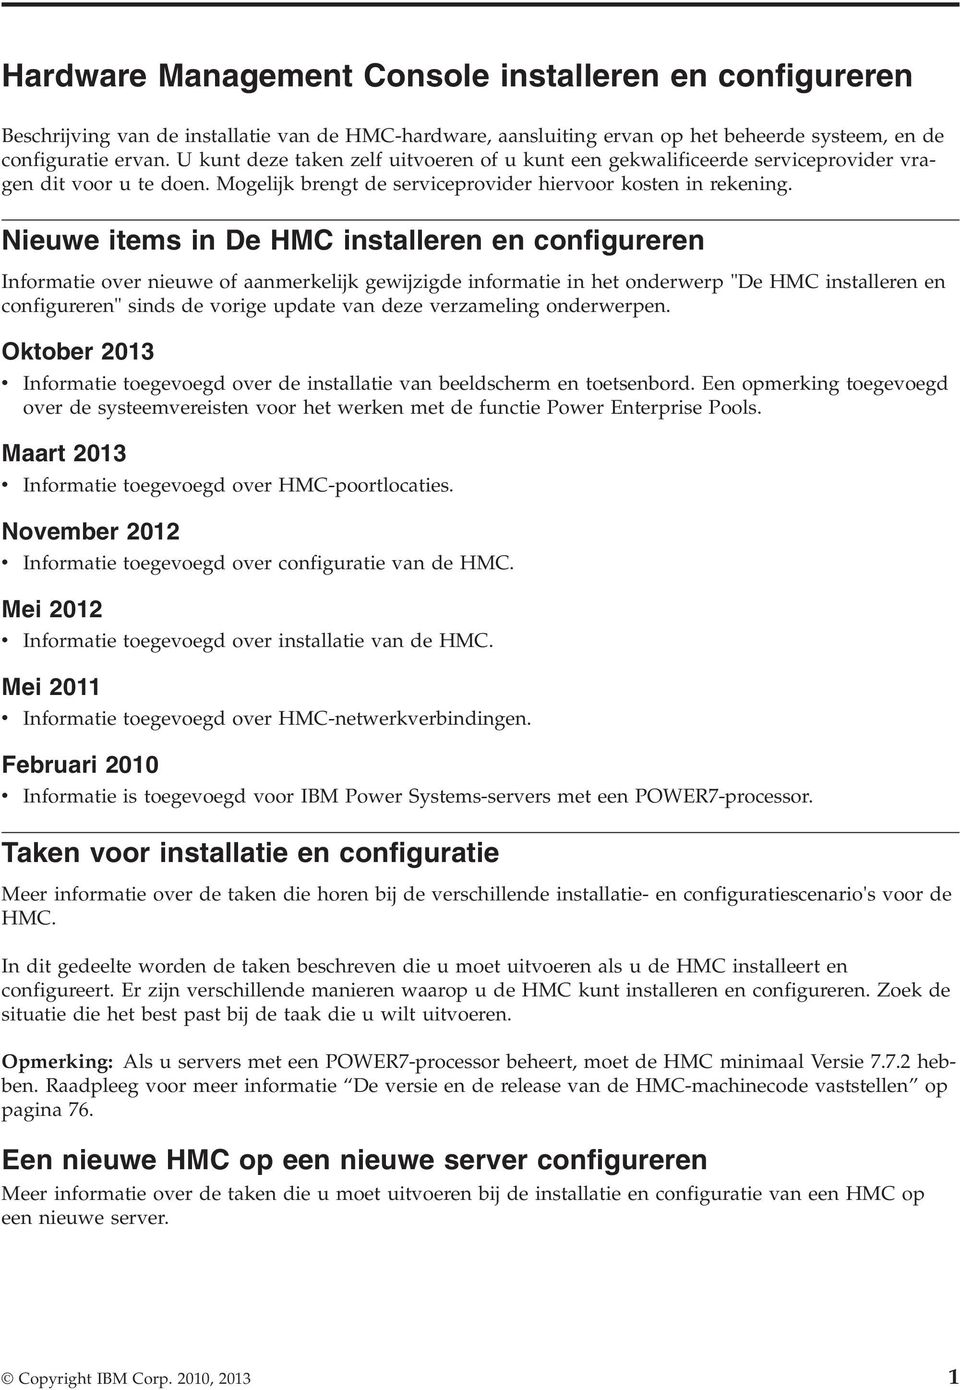 Nieuwe items in De HMC installeren en configureren Informatie over nieuwe of aanmerkelijk gewijzigde informatie in het onderwerp "De HMC installeren en configureren" sinds de vorige update van deze